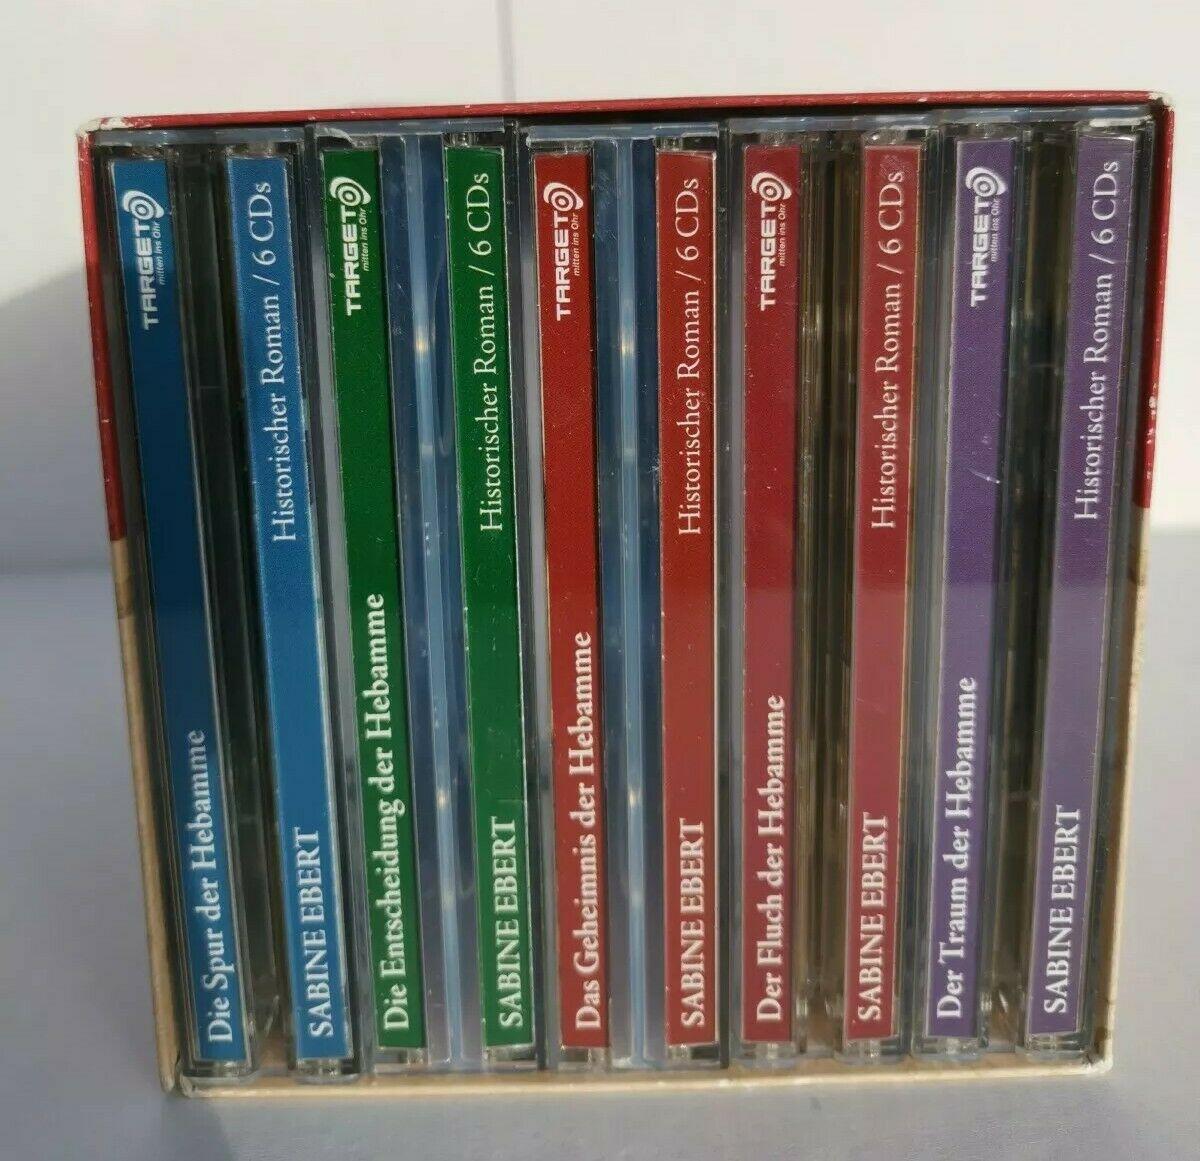 Die groe Hebammen-Saga. 5 Horbucher in einer Box, 30 CDs (TARGET - mitten ins O